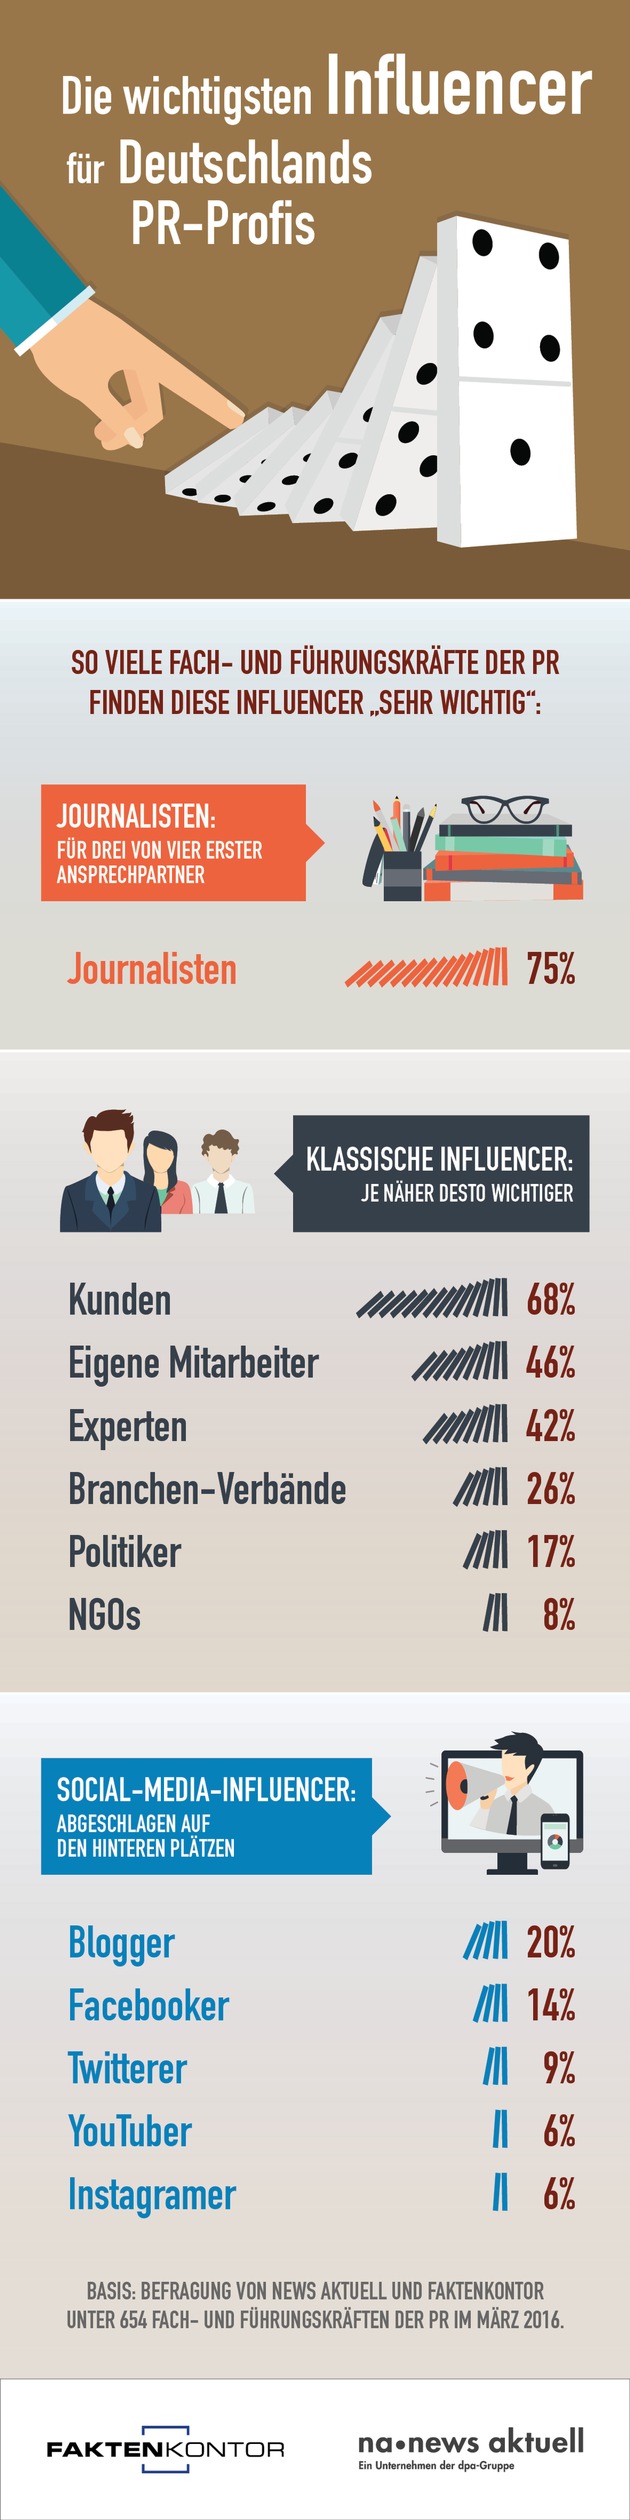 Influencer-Ranking: Journalisten für PR-Profis am wichtigsten / Kunden und Mitarbeiter deutlich vor Bloggern